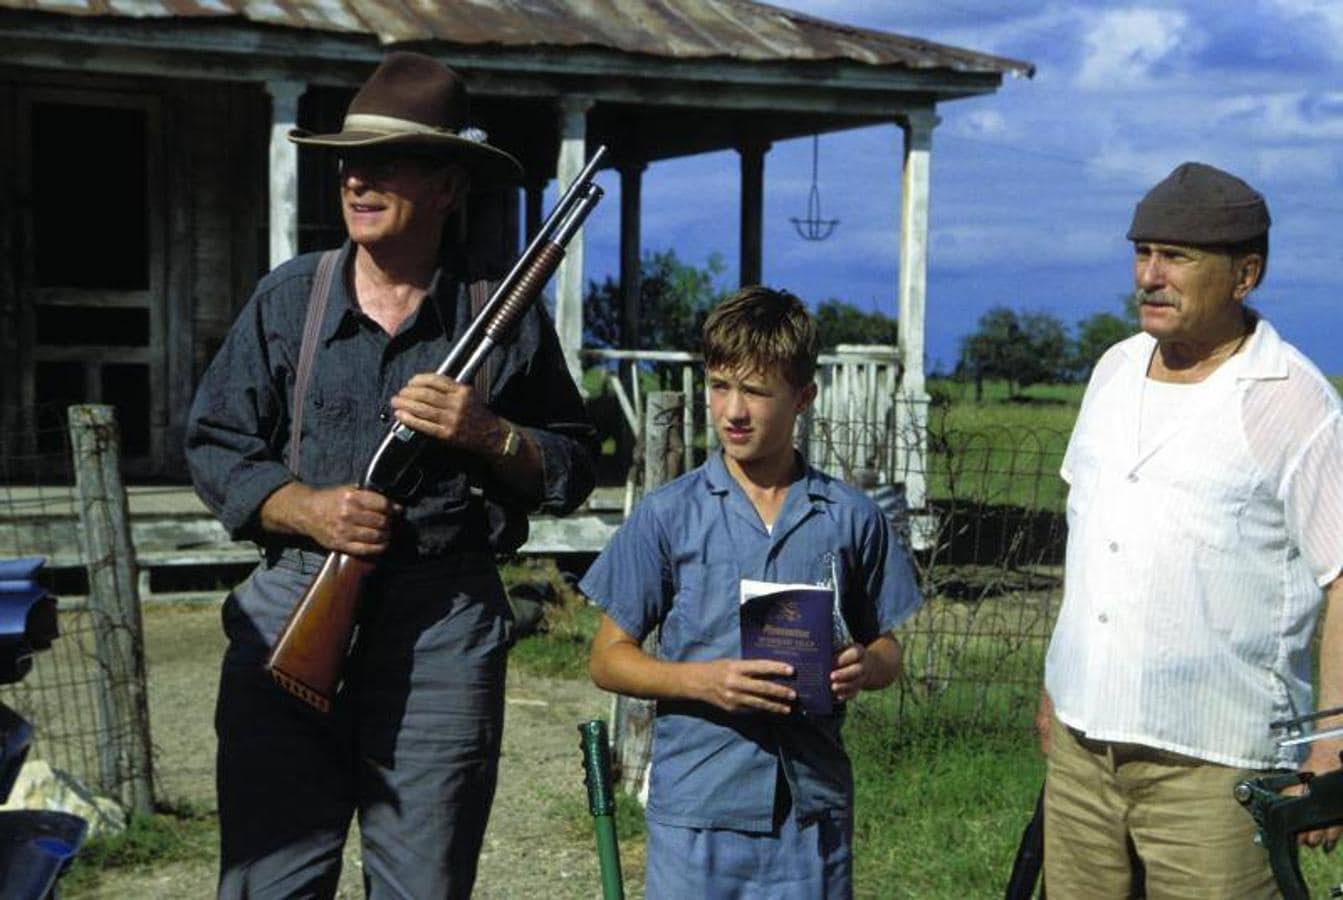 «Dos viejos cascarrabias» (2003). Caine, Haley Joel Osment y Robert Duval en una imagen promocional de la película que grabaron en 2003